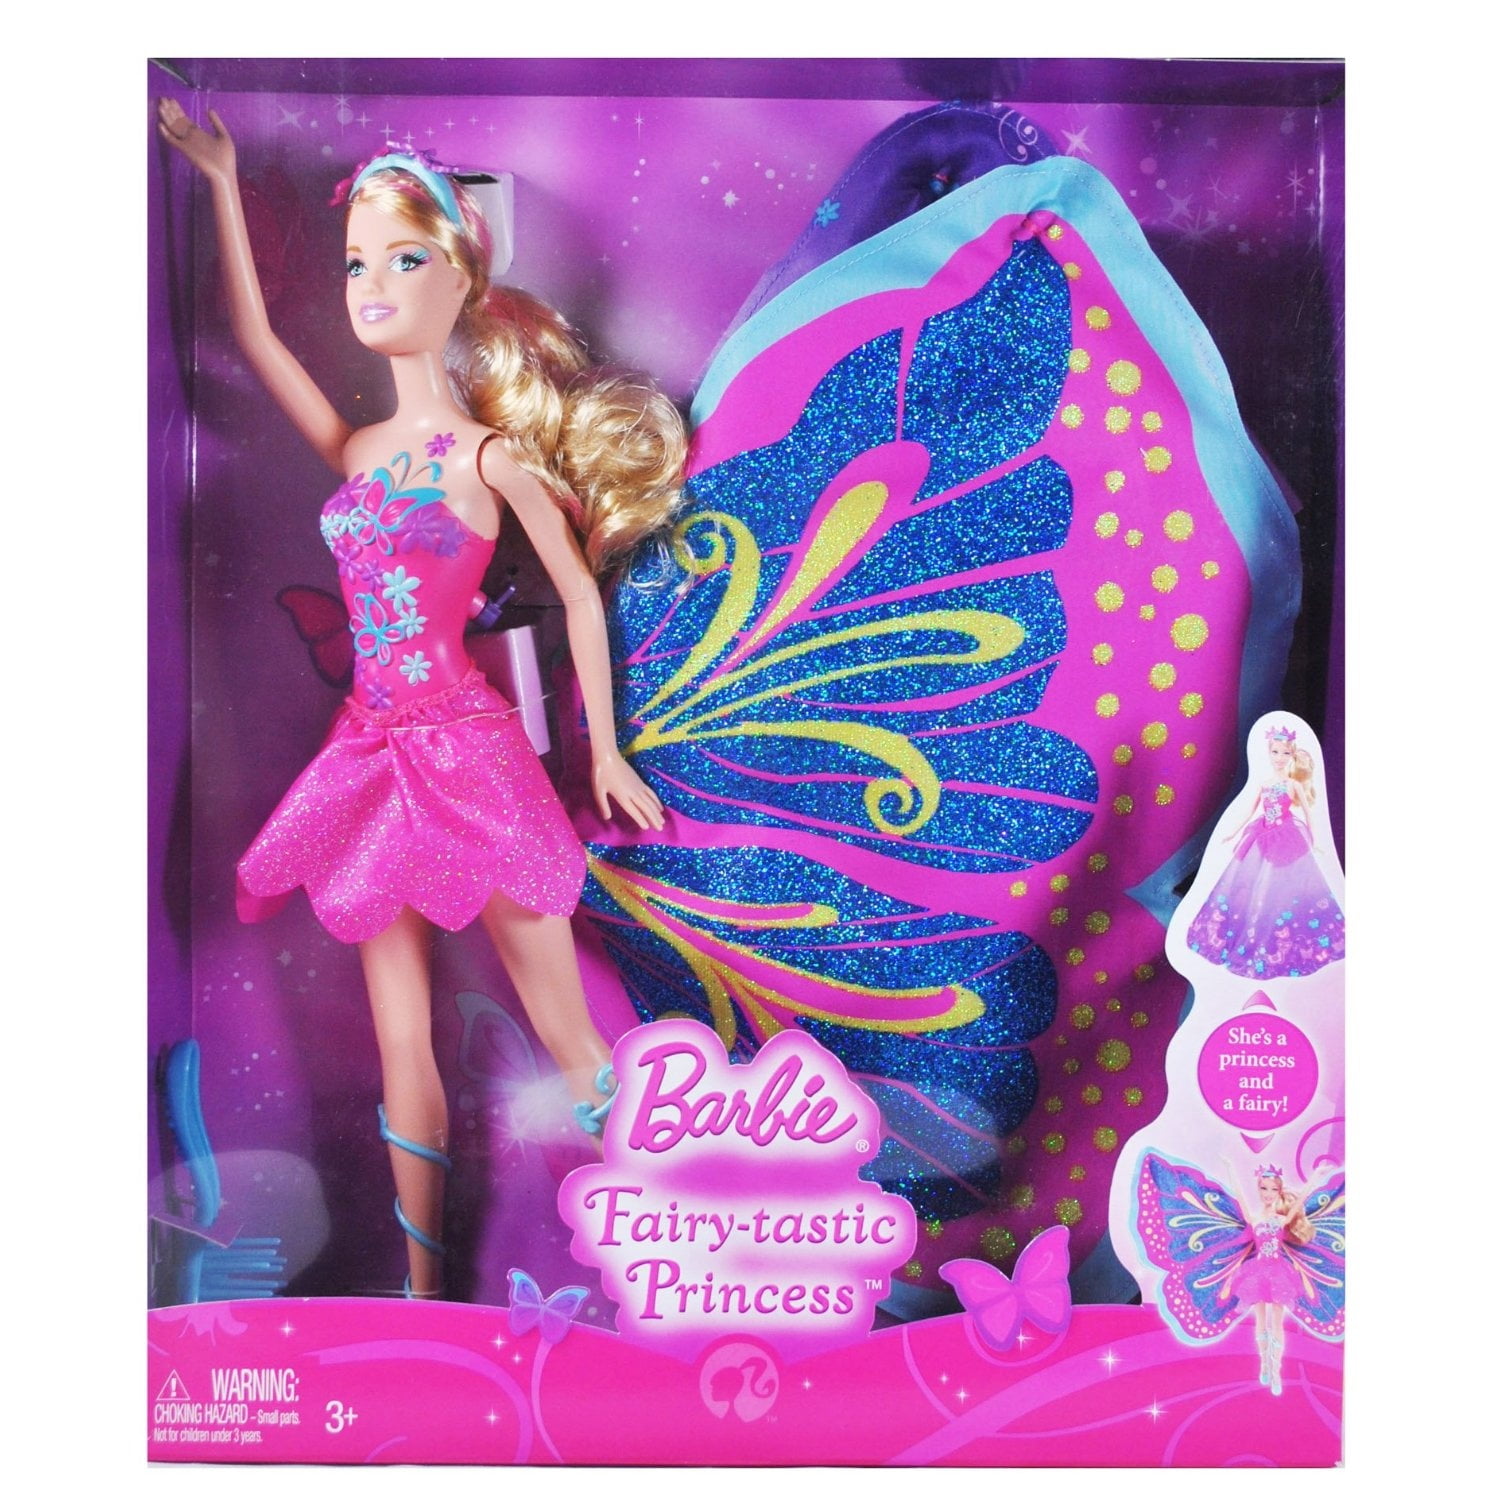 Fairy-tastic Princess Barbie Doll 2009 Mattel T4552 - Walmart.com